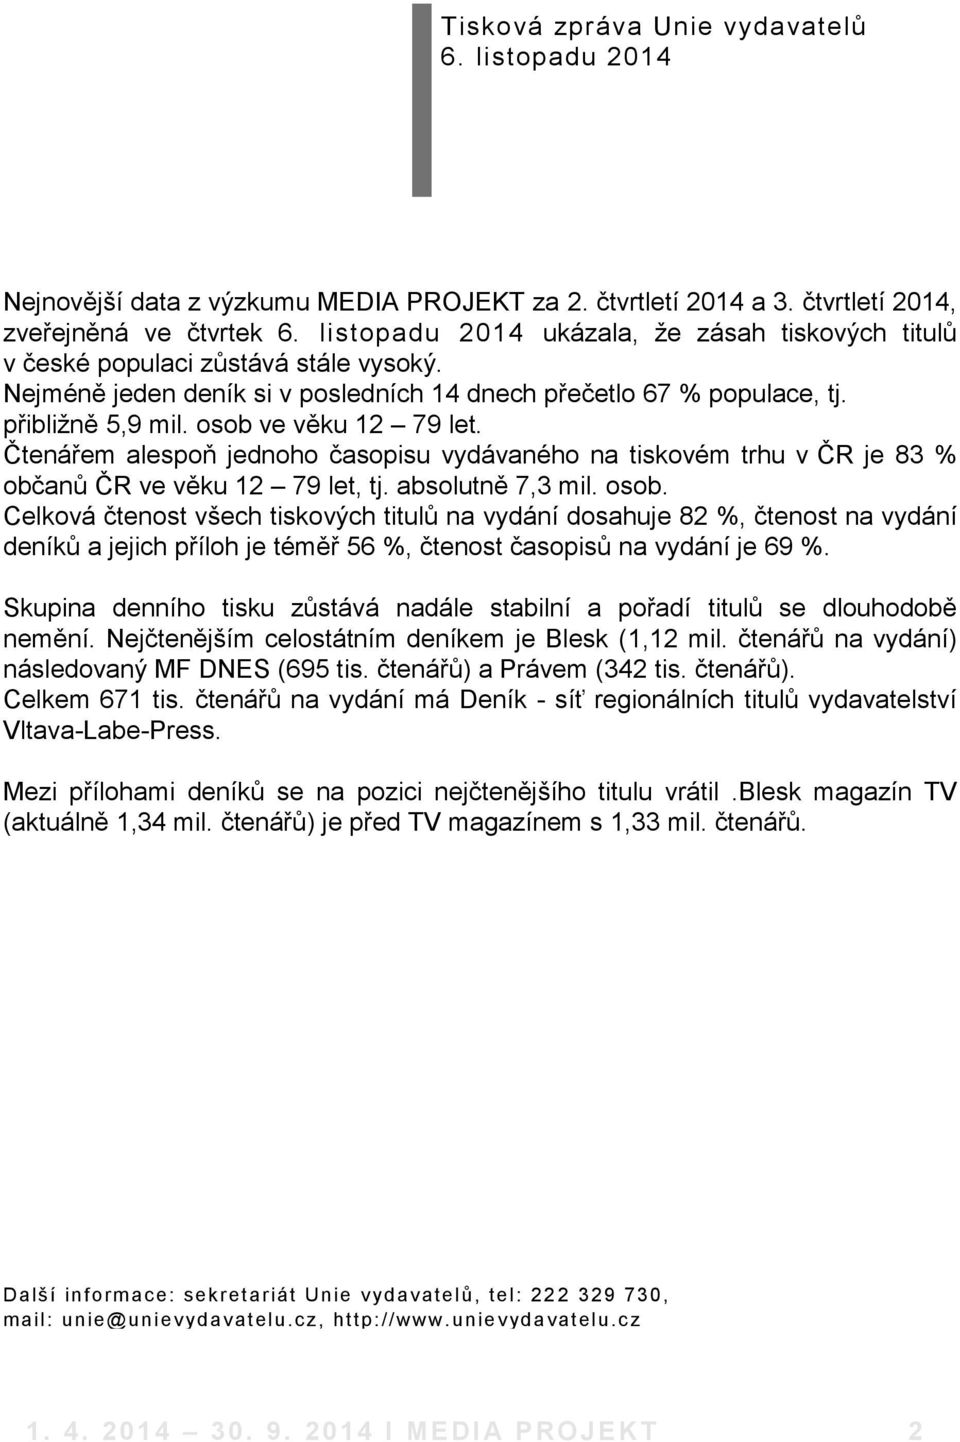 osob ve věku 12 79 let. Čtenářem alespoň jednoho časopisu vydávaného na tiskovém trhu v ČR je 83 % občanů ČR ve věku 12 79 let, tj. absolutně 7,3 mil. osob.